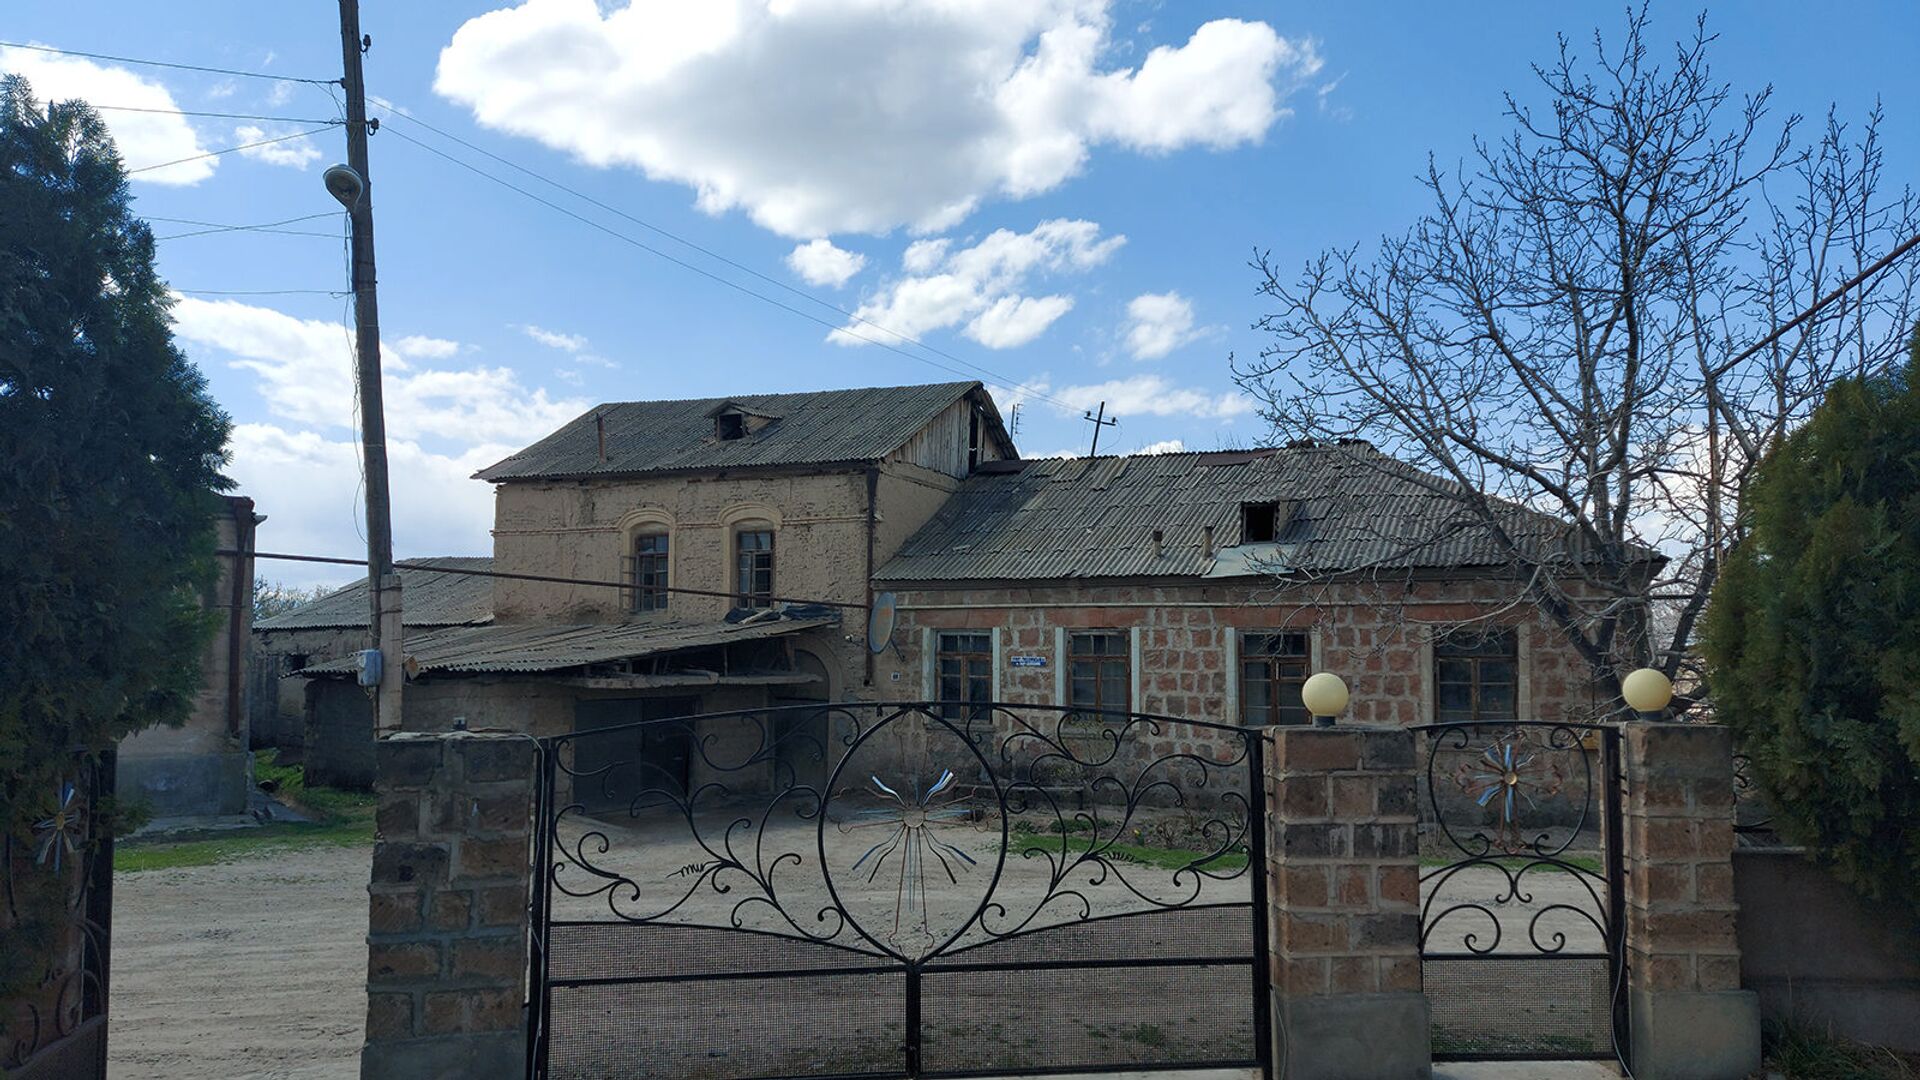 Село Верин Двин, Араратская область - Sputnik Արմենիա, 1920, 10.04.2021